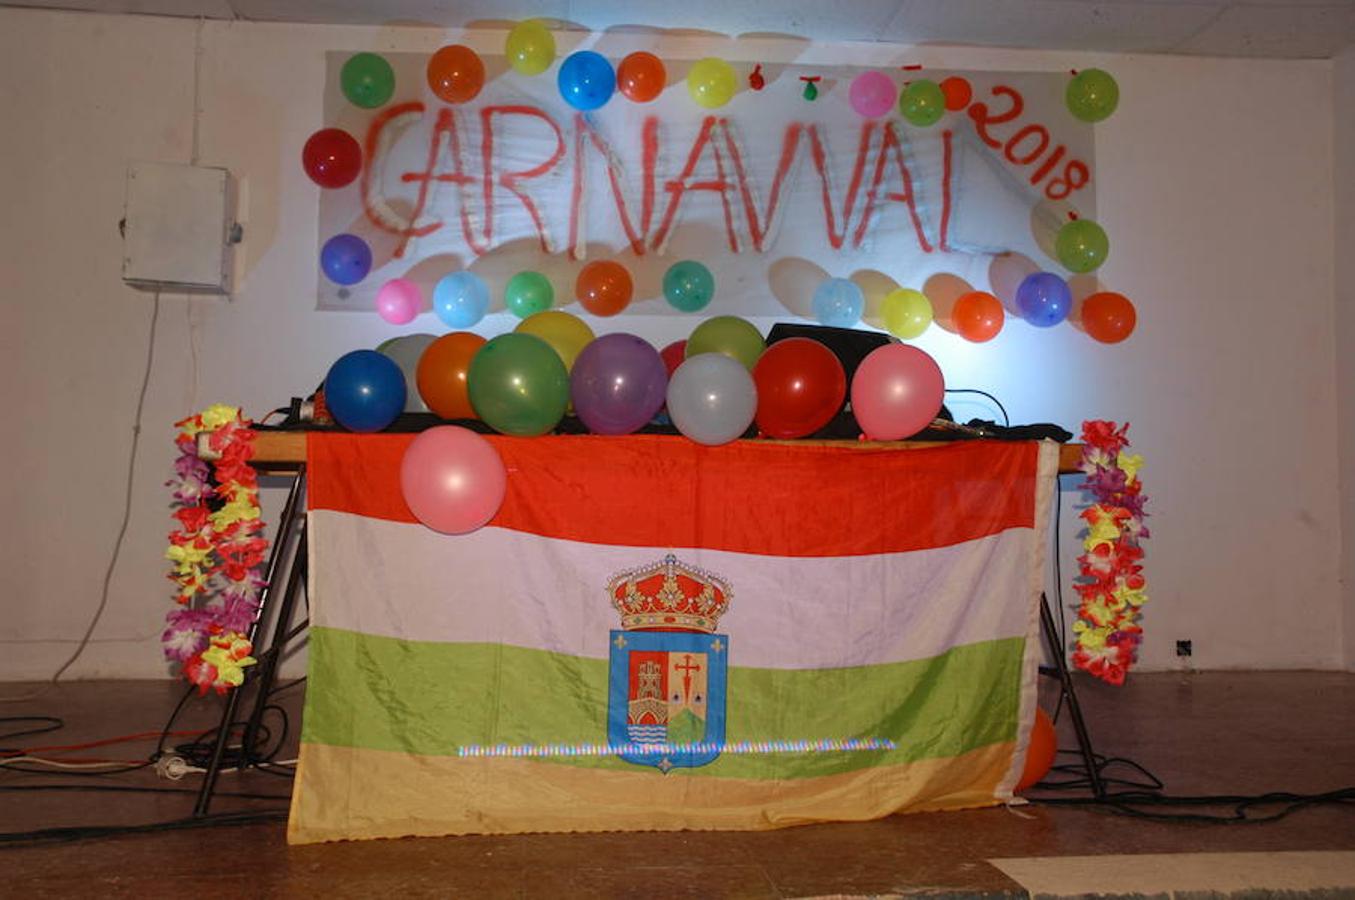 Afición y devoción por el Carnaval. La localidad de Valverde festejó el desfile en honor a Don Carnal con alegría y colorido. Los atuendos para la ocasión lucieron en todo sus esplendor entre peques y mayores.